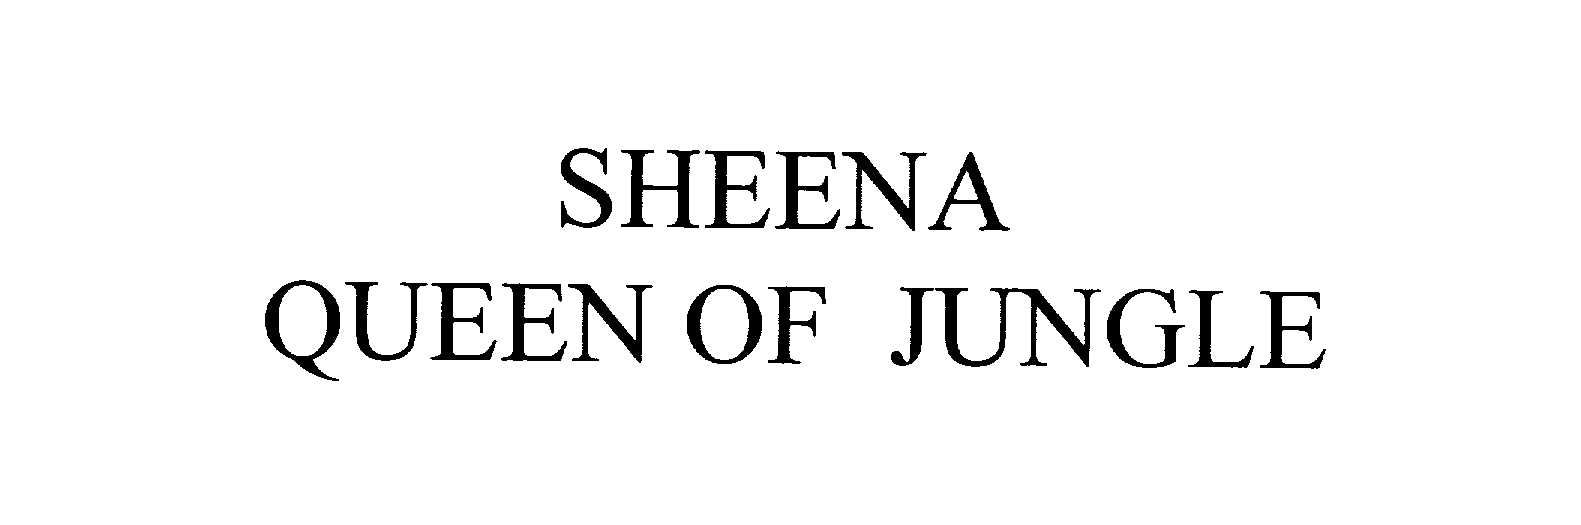  SHEENA QUEEN OF JUNGLE